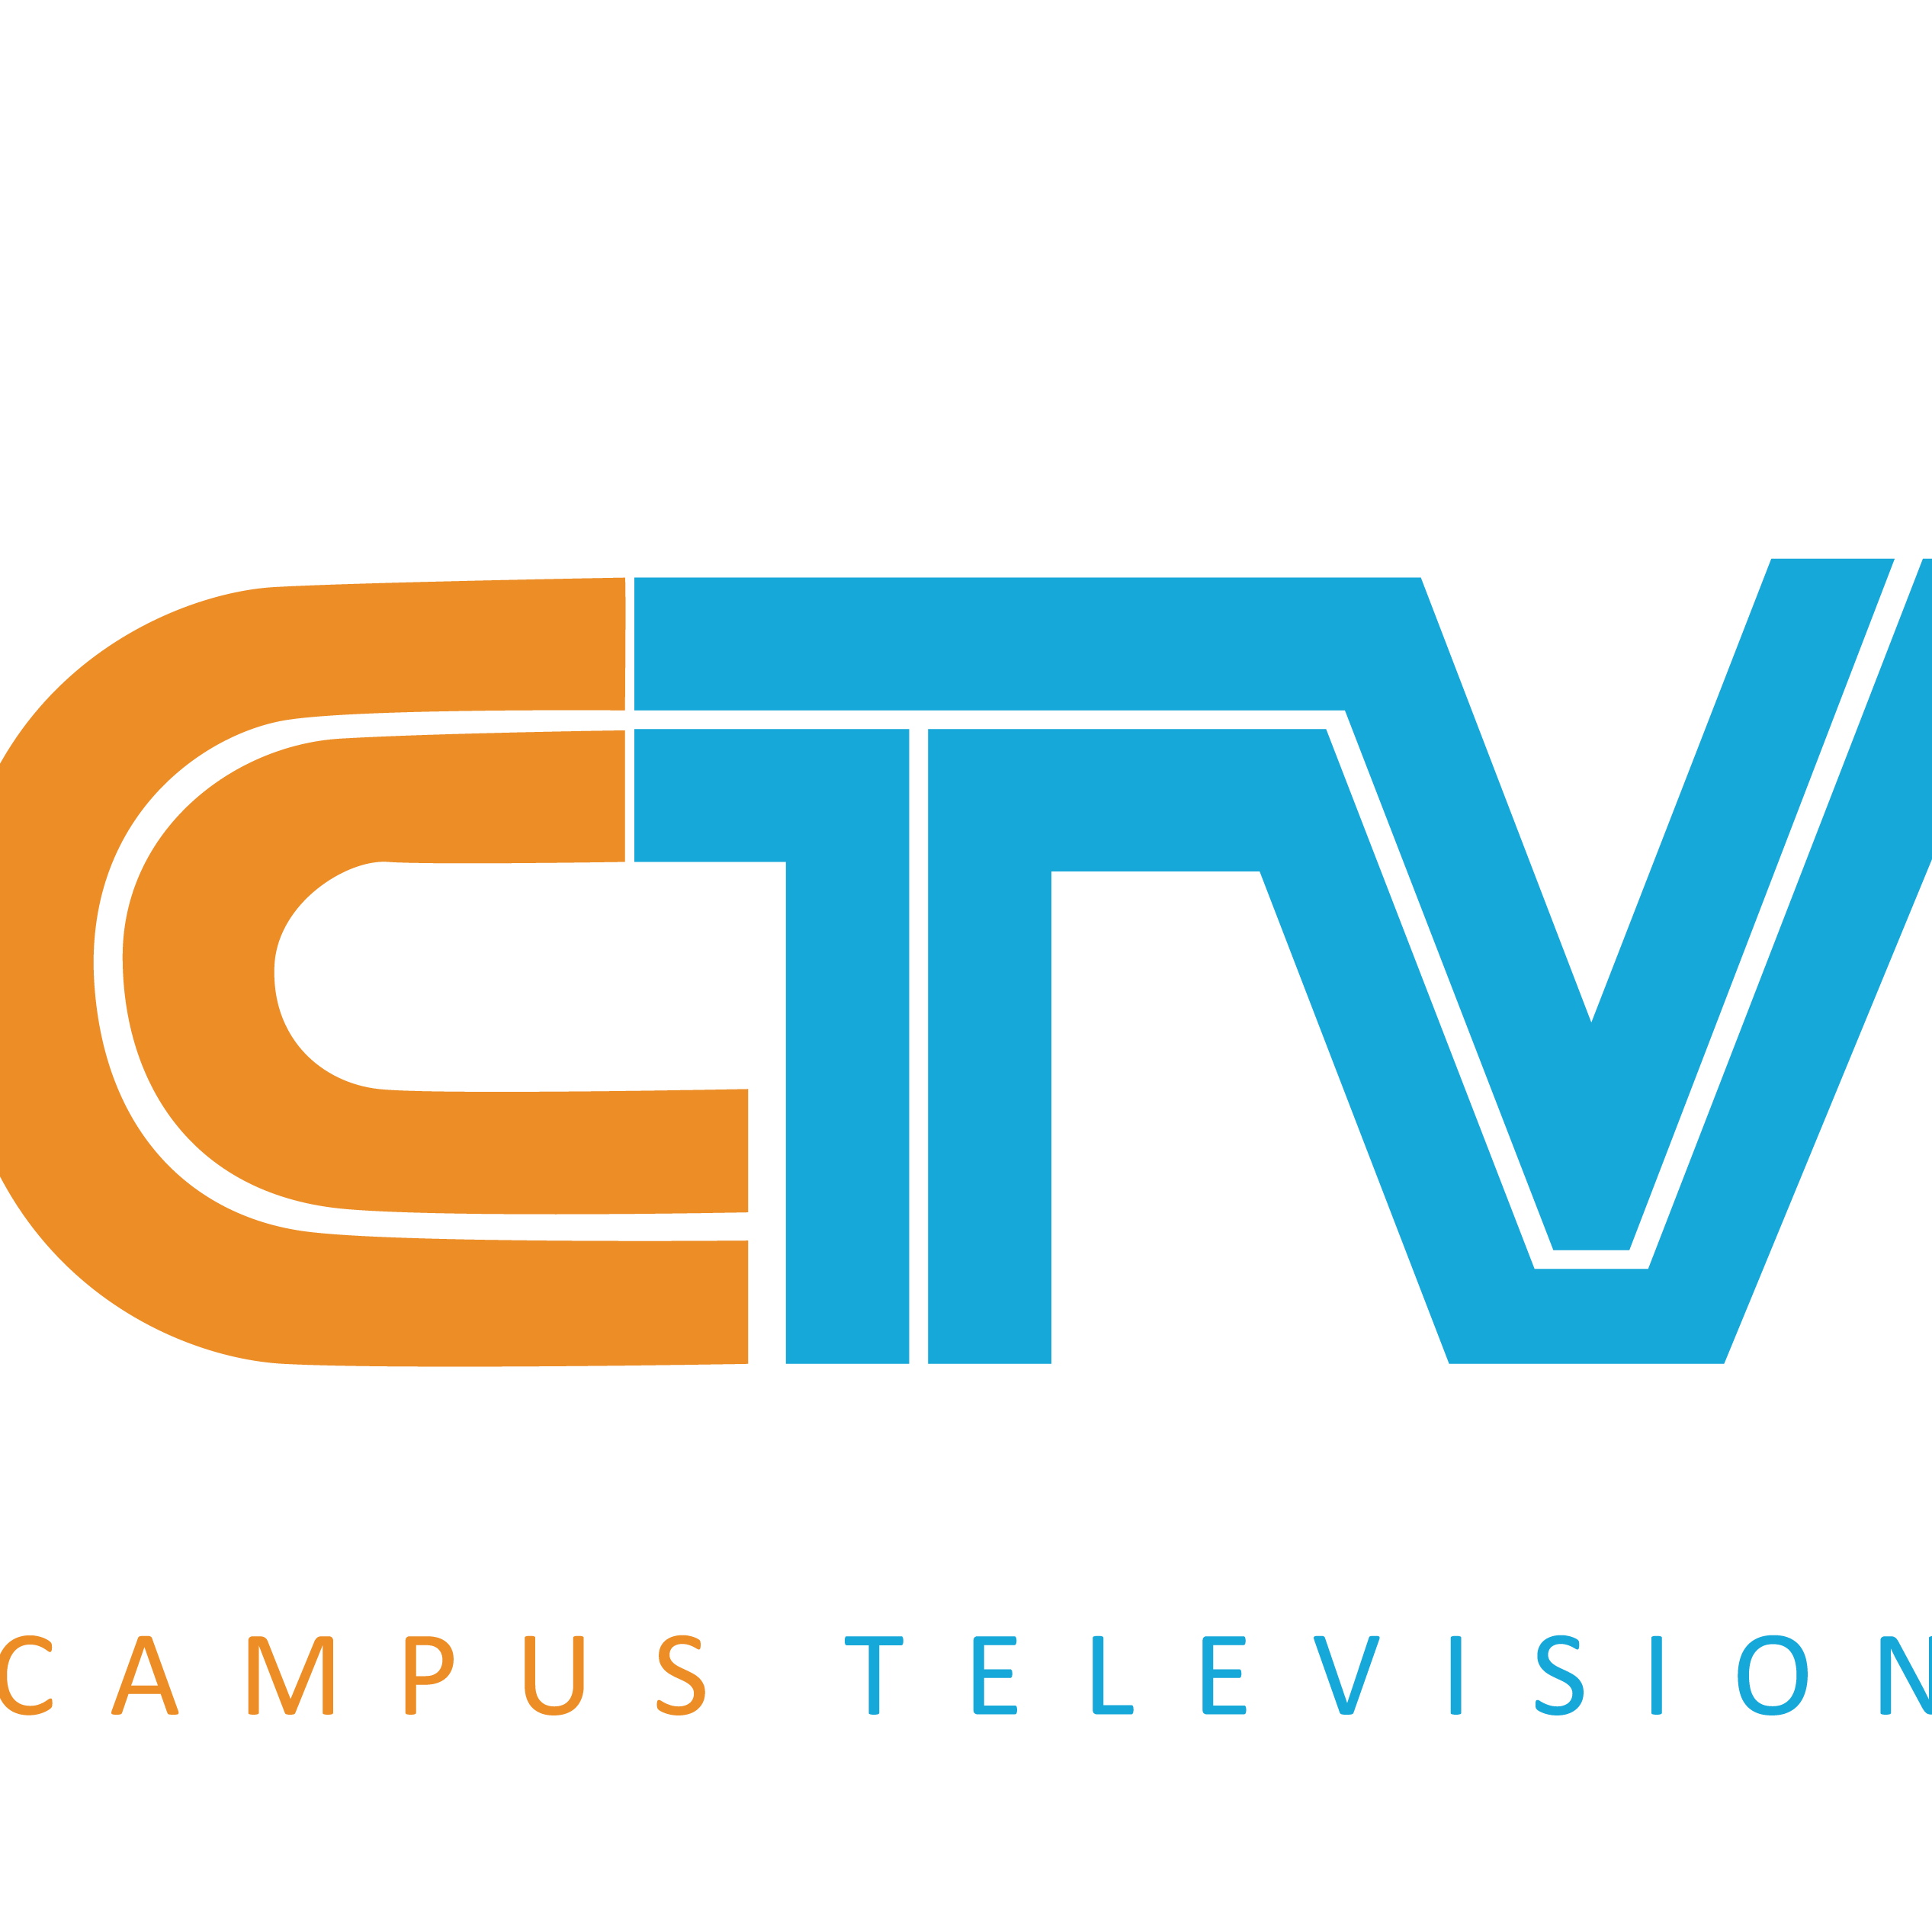 CTV eRadio